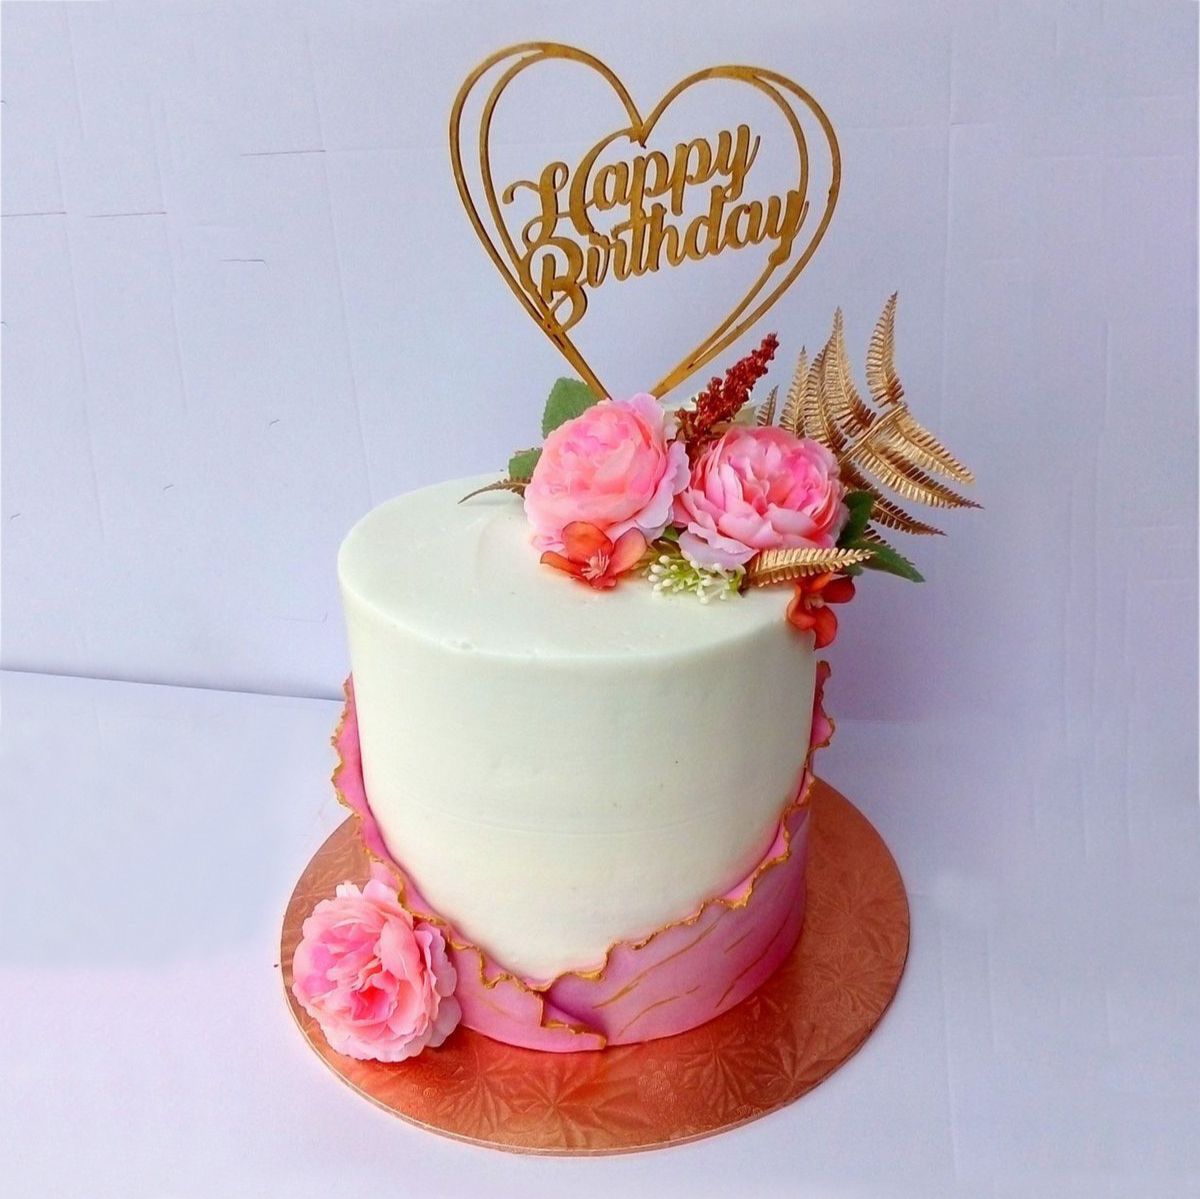 Happy Birthday Fondant Cake